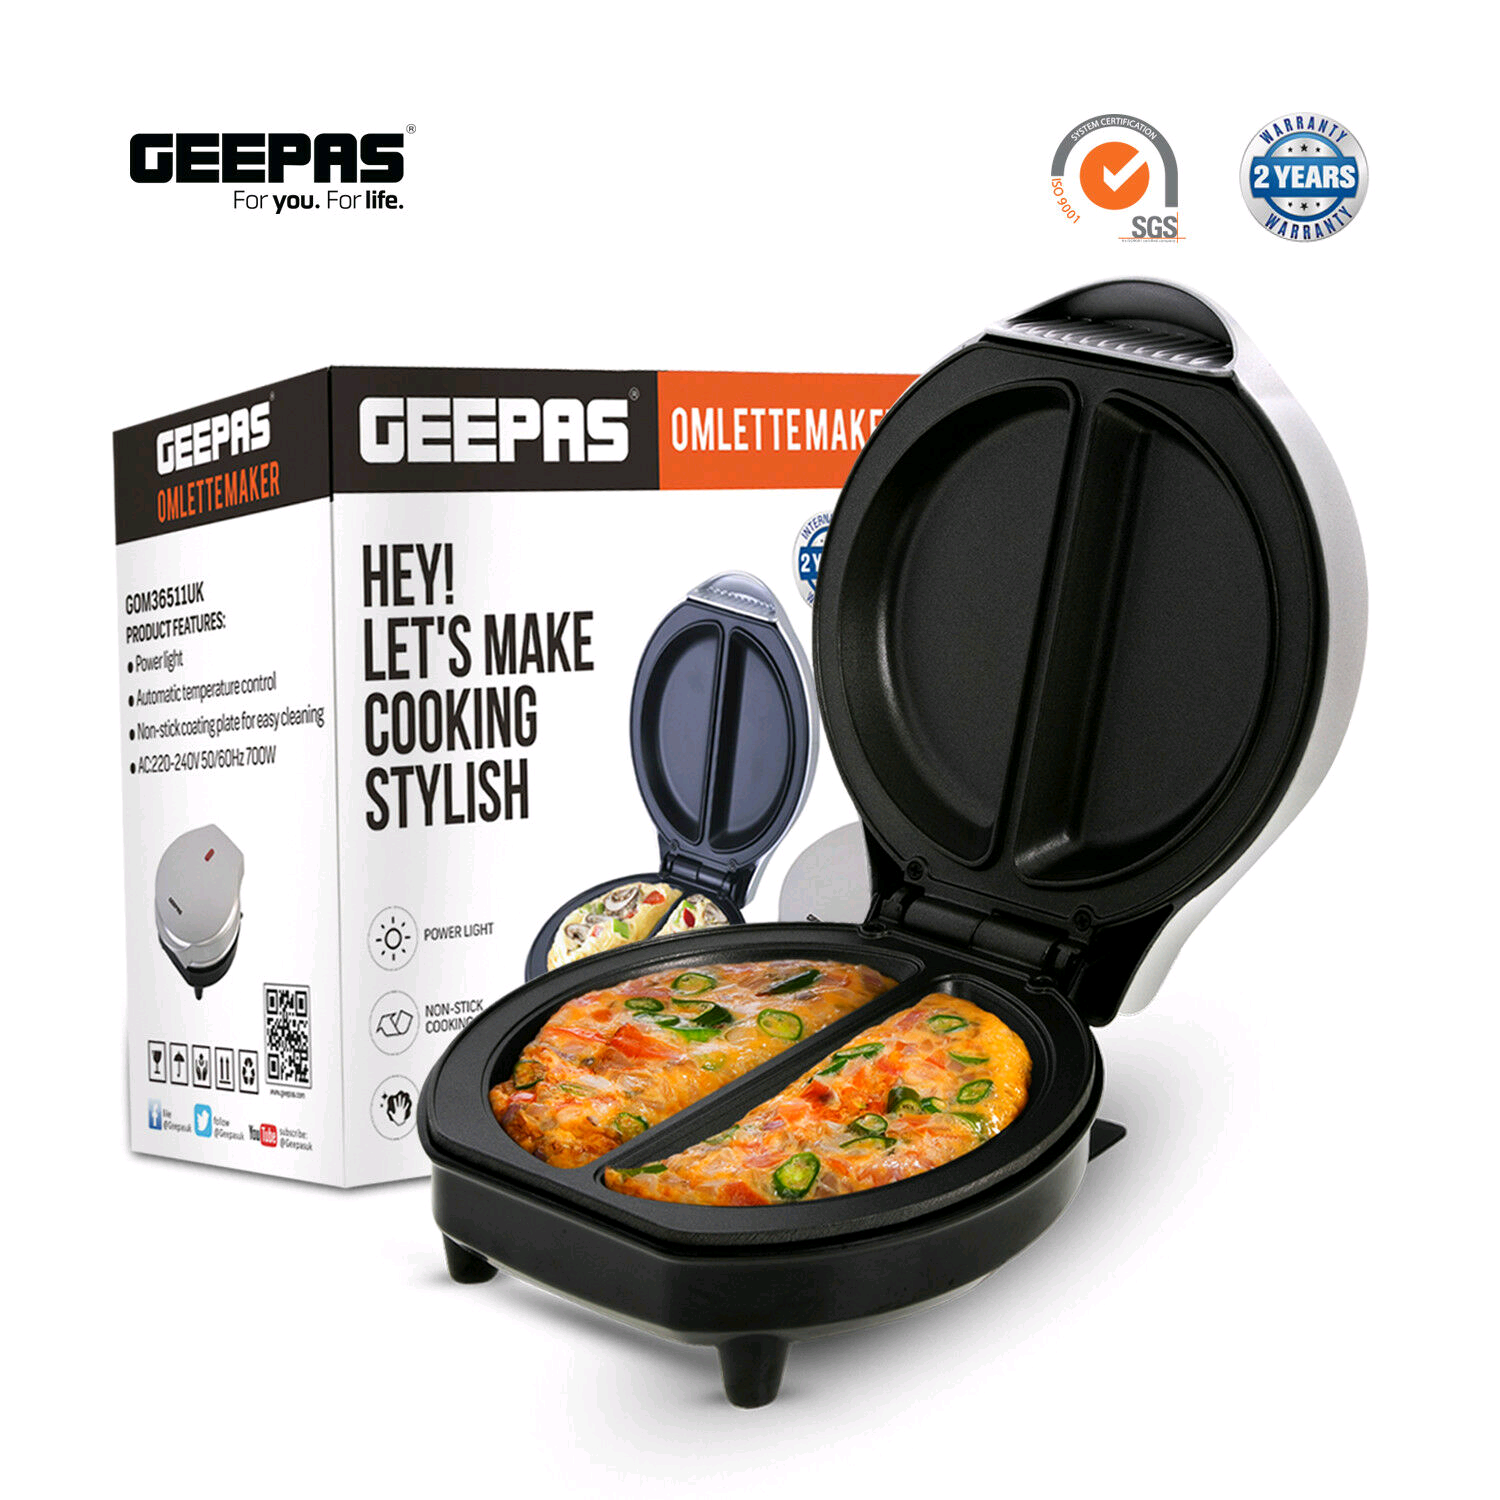 Geepas GOM36511UK Omelette Maker 700W 